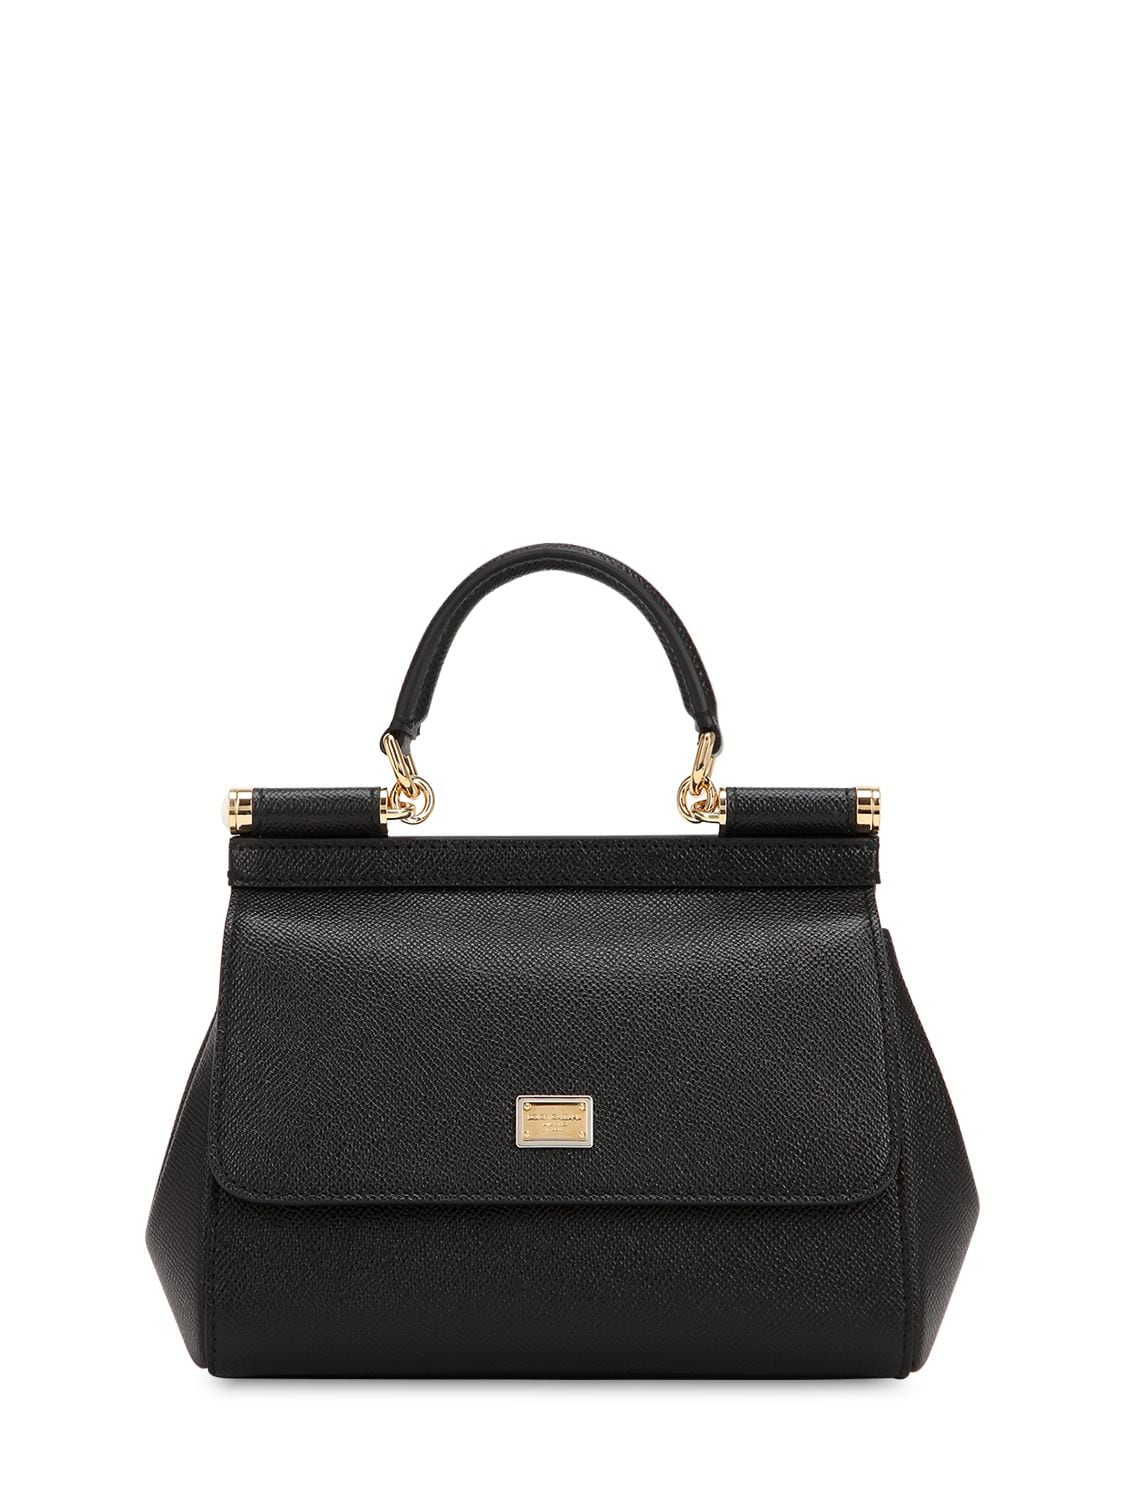 Dolce & Gabbana Miss Sicily Medium Leather Shoulder Bag In Black